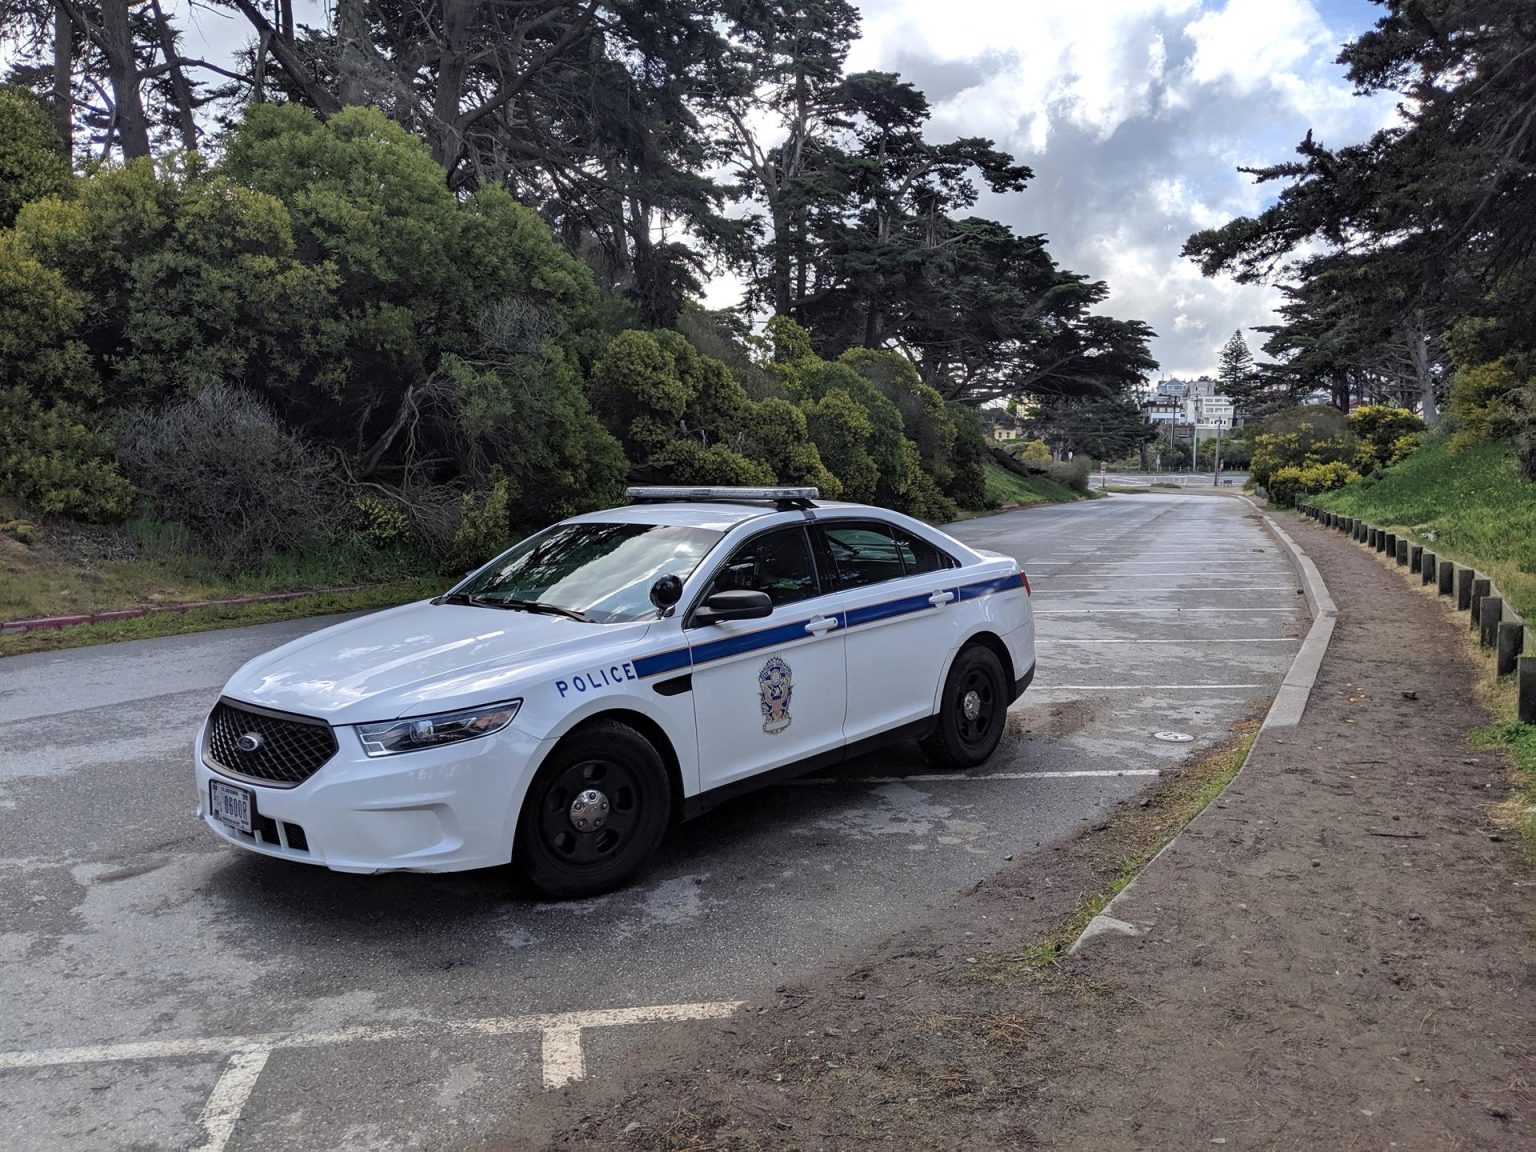 Un coche de policía patrulla en San Francisco, California (EEUU). Imagen de archivo. EFE/ Marc Arcas